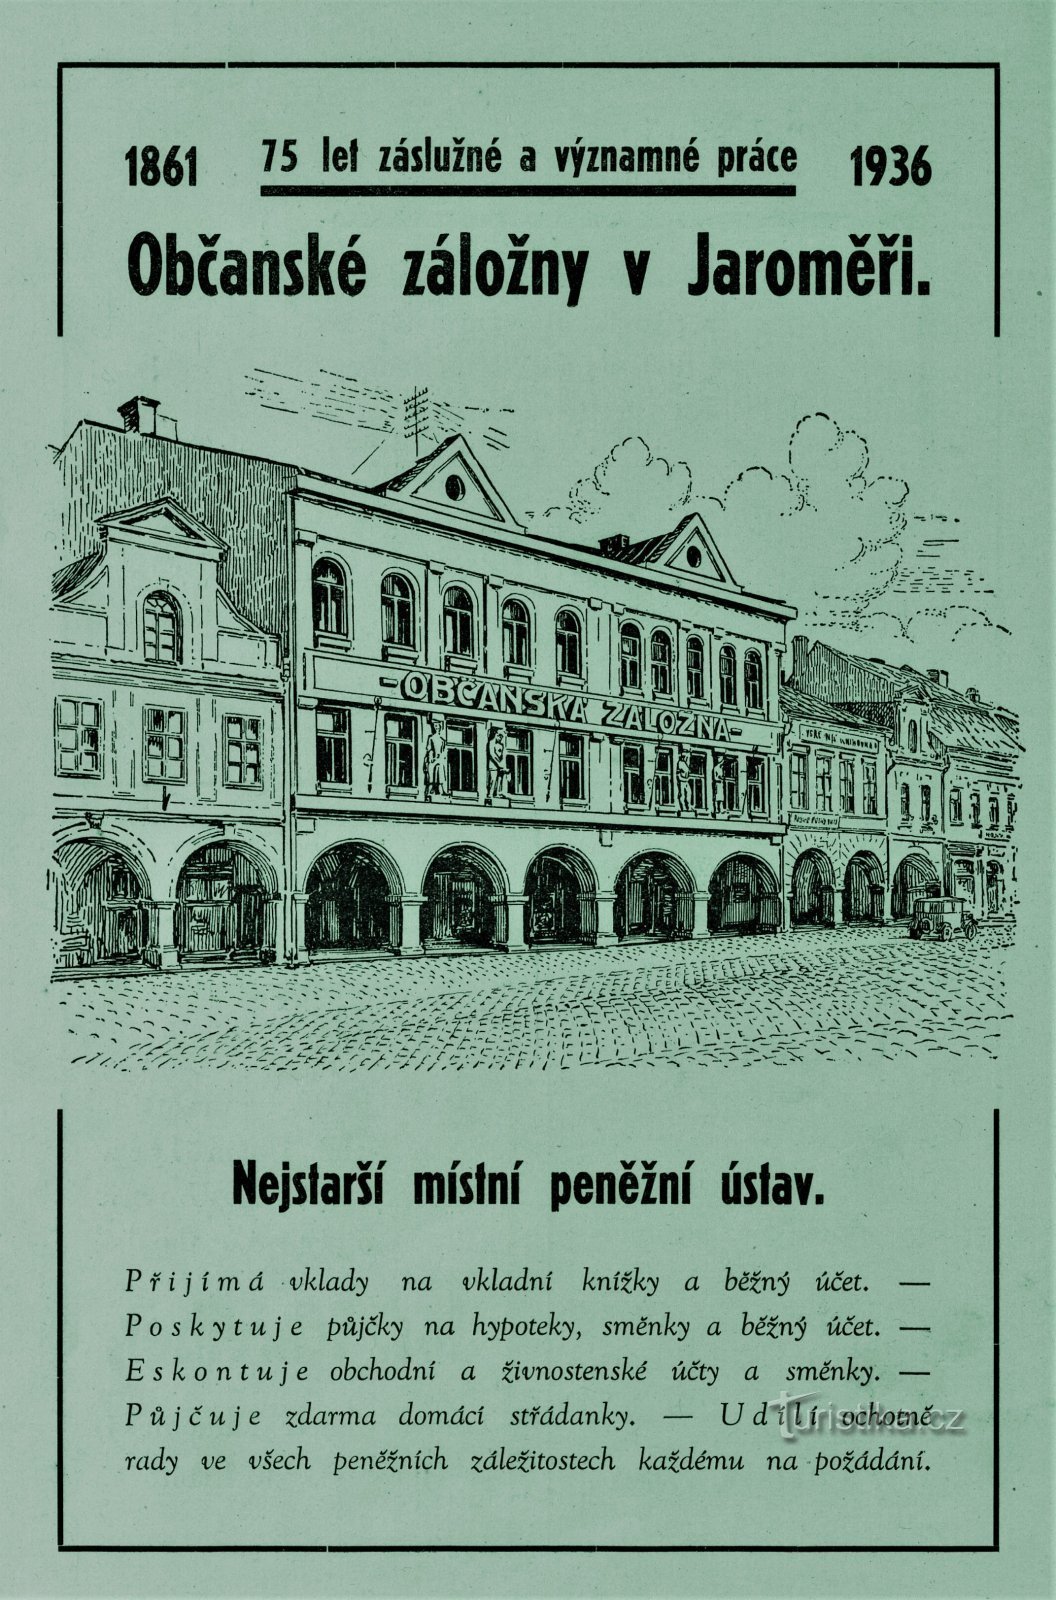 1936 年に撮影されたヤロニェシュの市民貯蓄銀行の現代的な広告